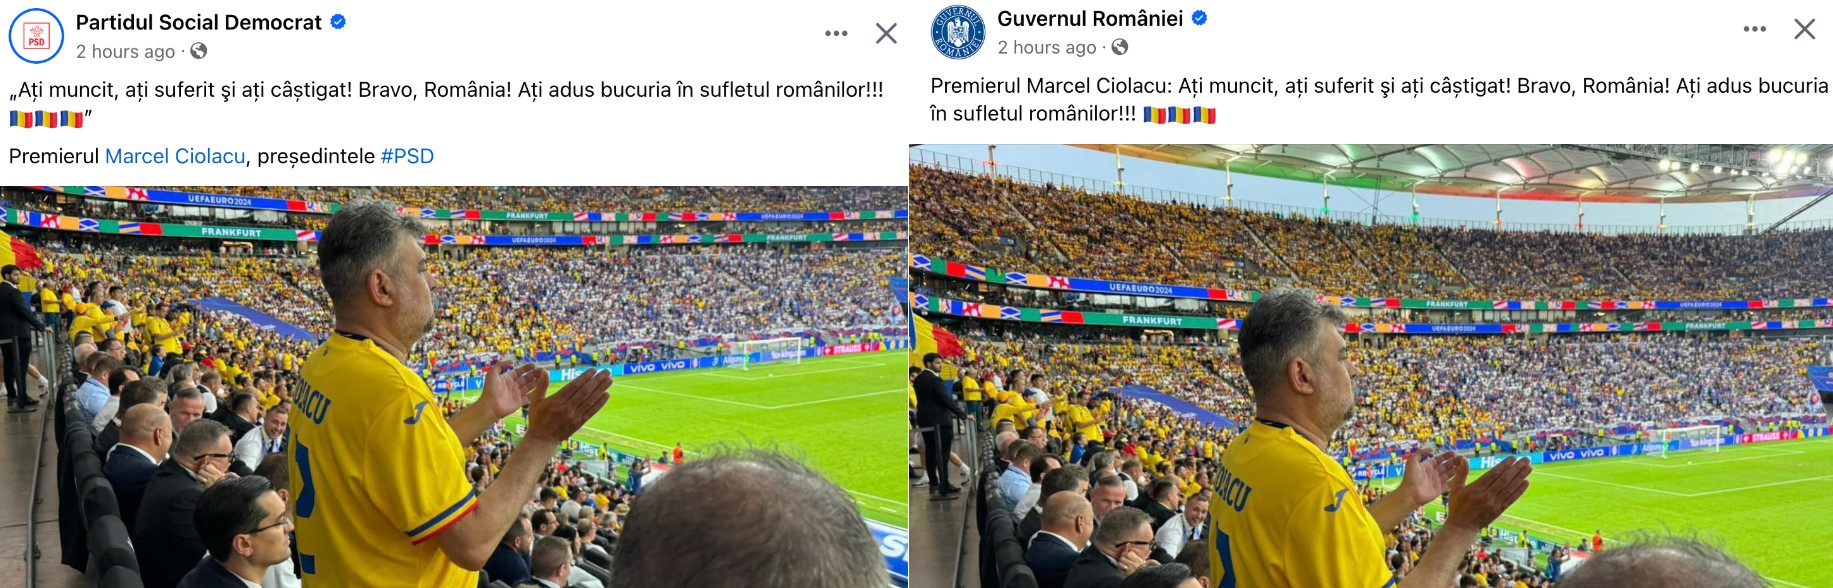 Guvernul României și PSD, mesaje identice pe paginile de Facebook. Comentarii cenzurate și promovarea persoanei lui Marcel Ciolacu.